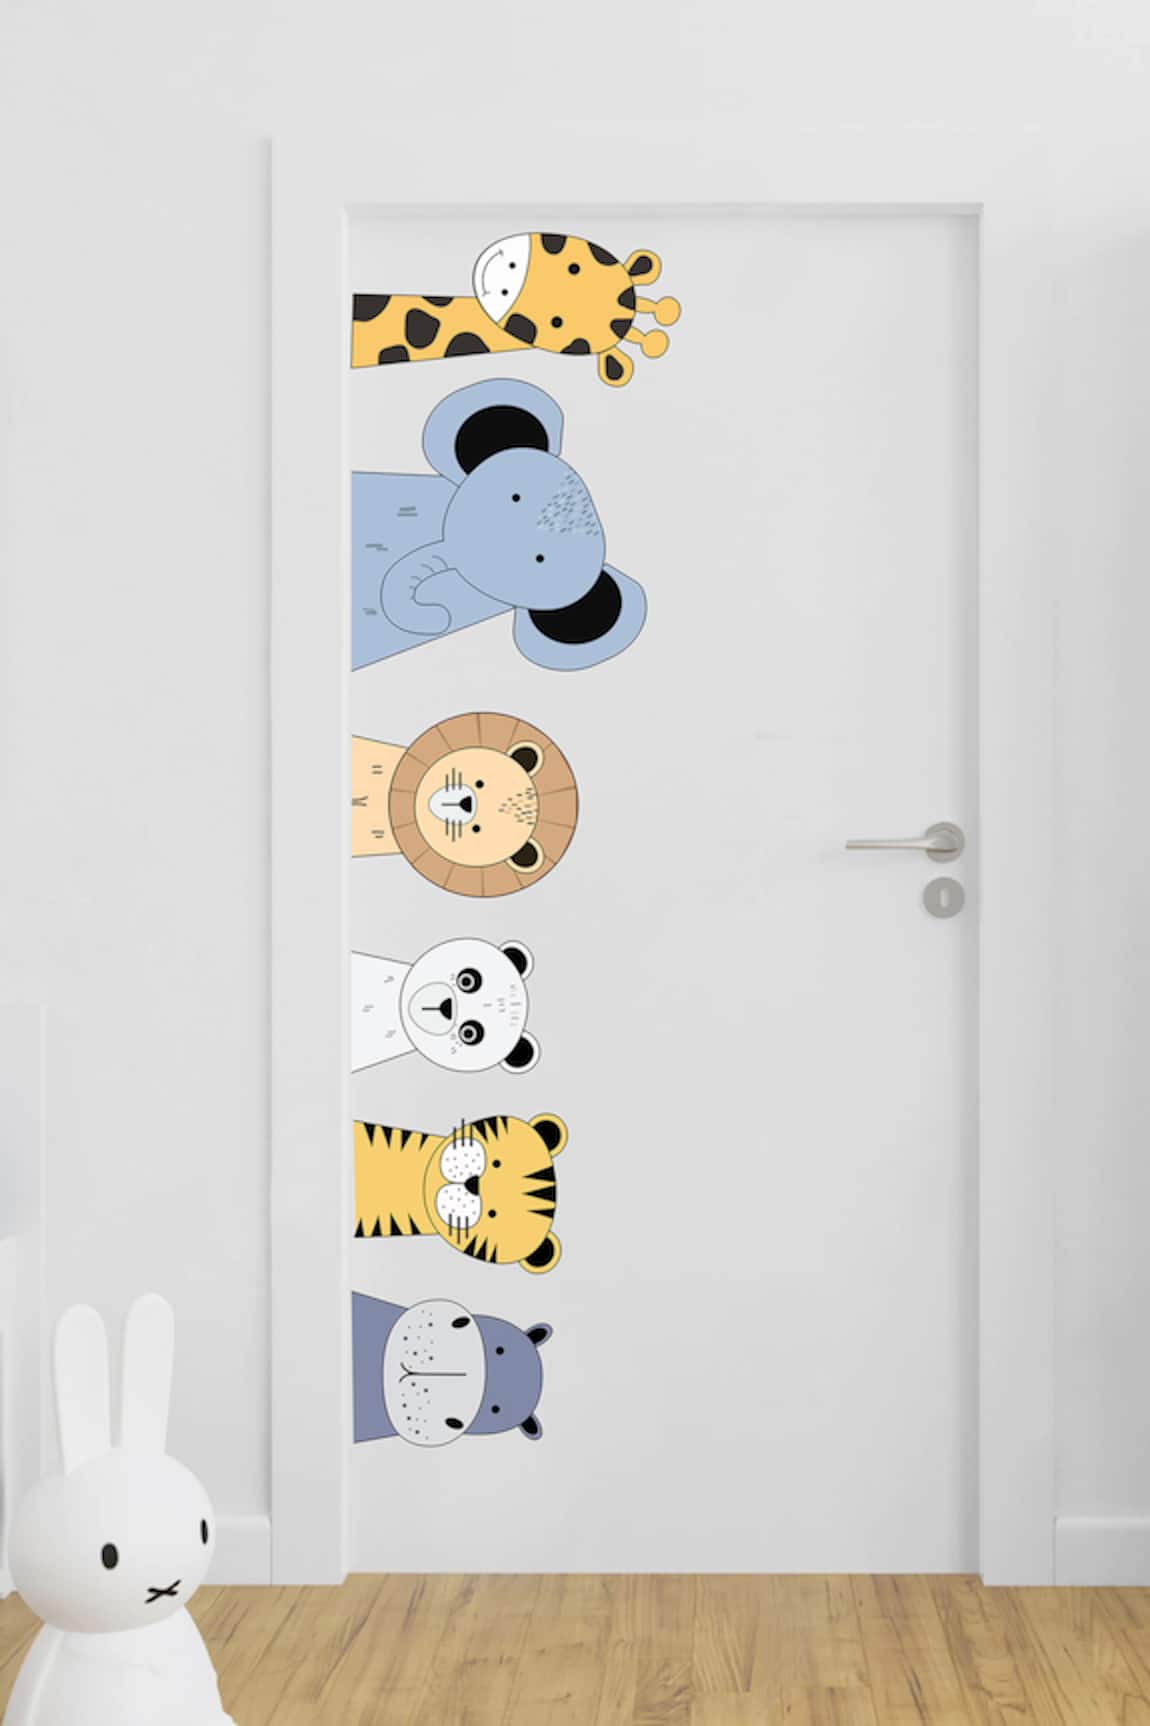 My Kids Wall Peeping Safari Animals Door Wall Stickers 6 Pcs Set